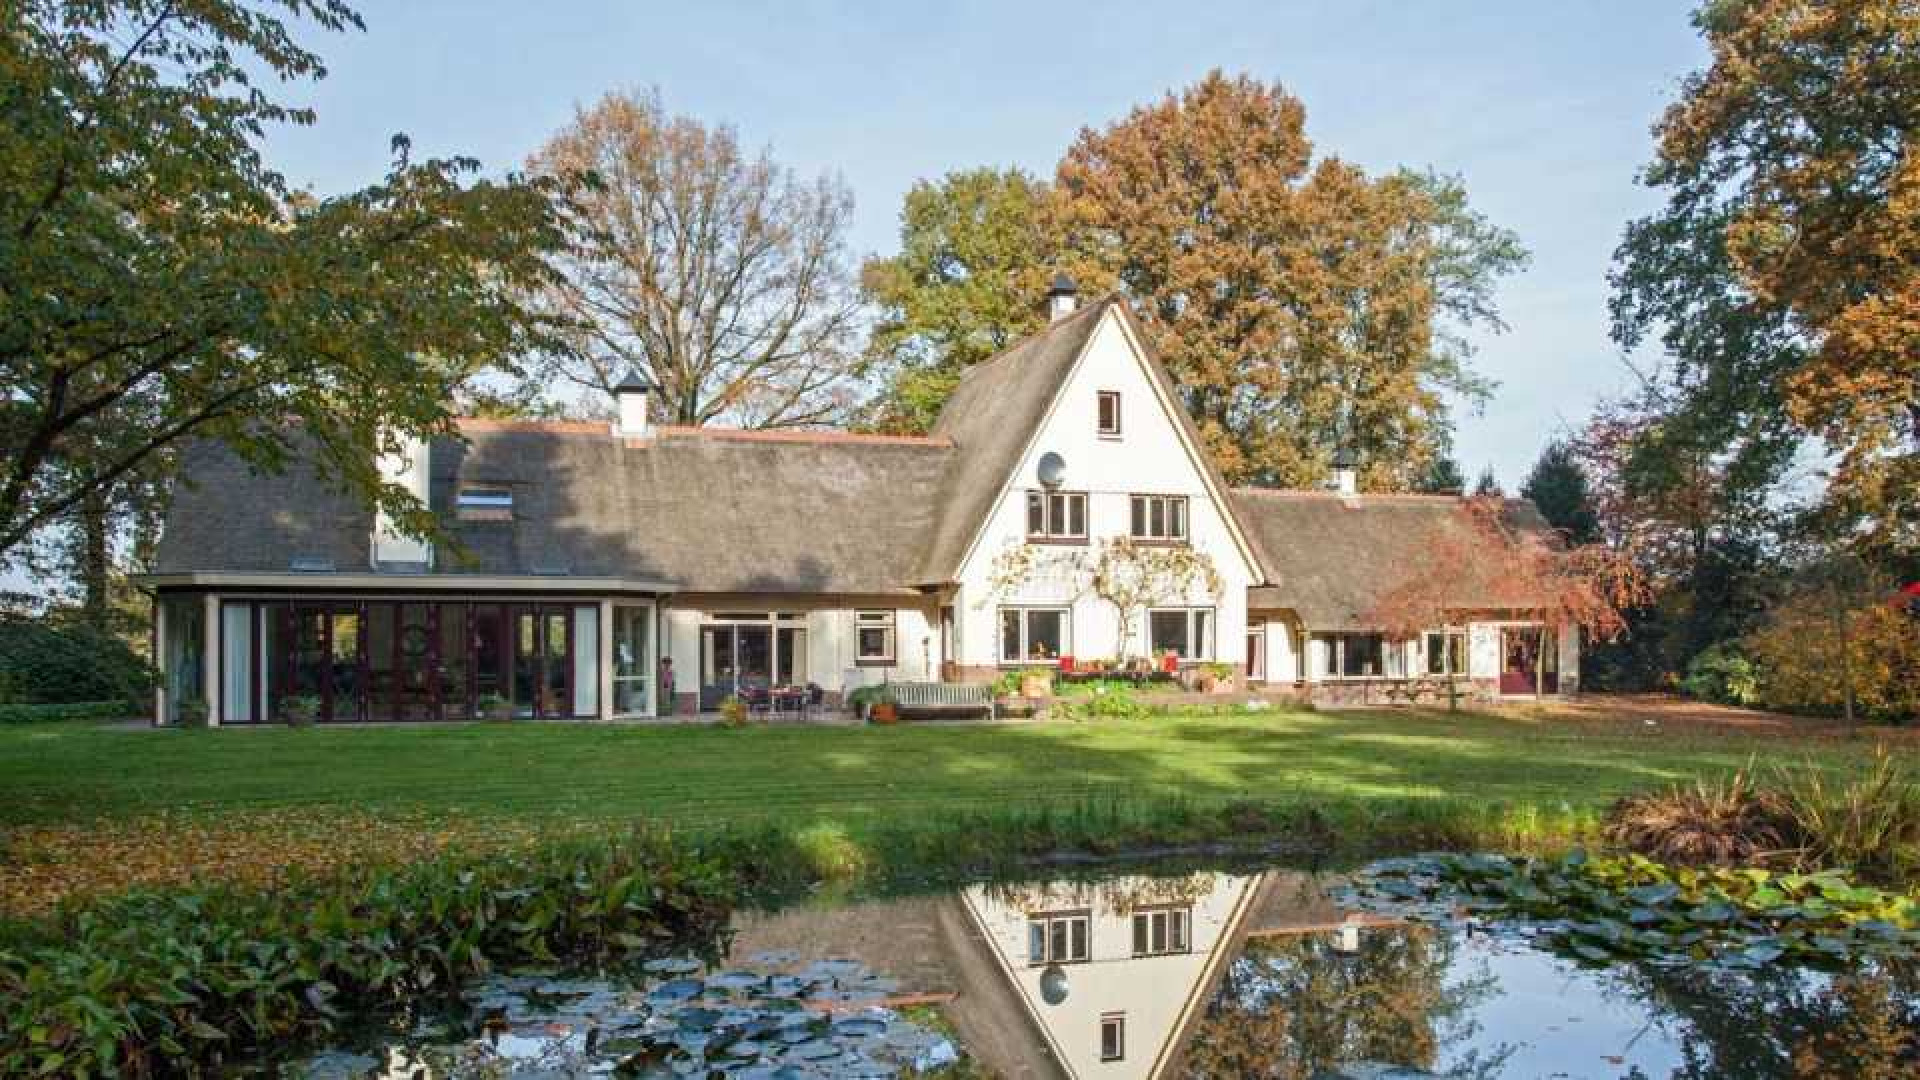 Oud PvdA topman Marcel van Dam haalt zijn landhuis uit de verkoop. Zie foto's 2